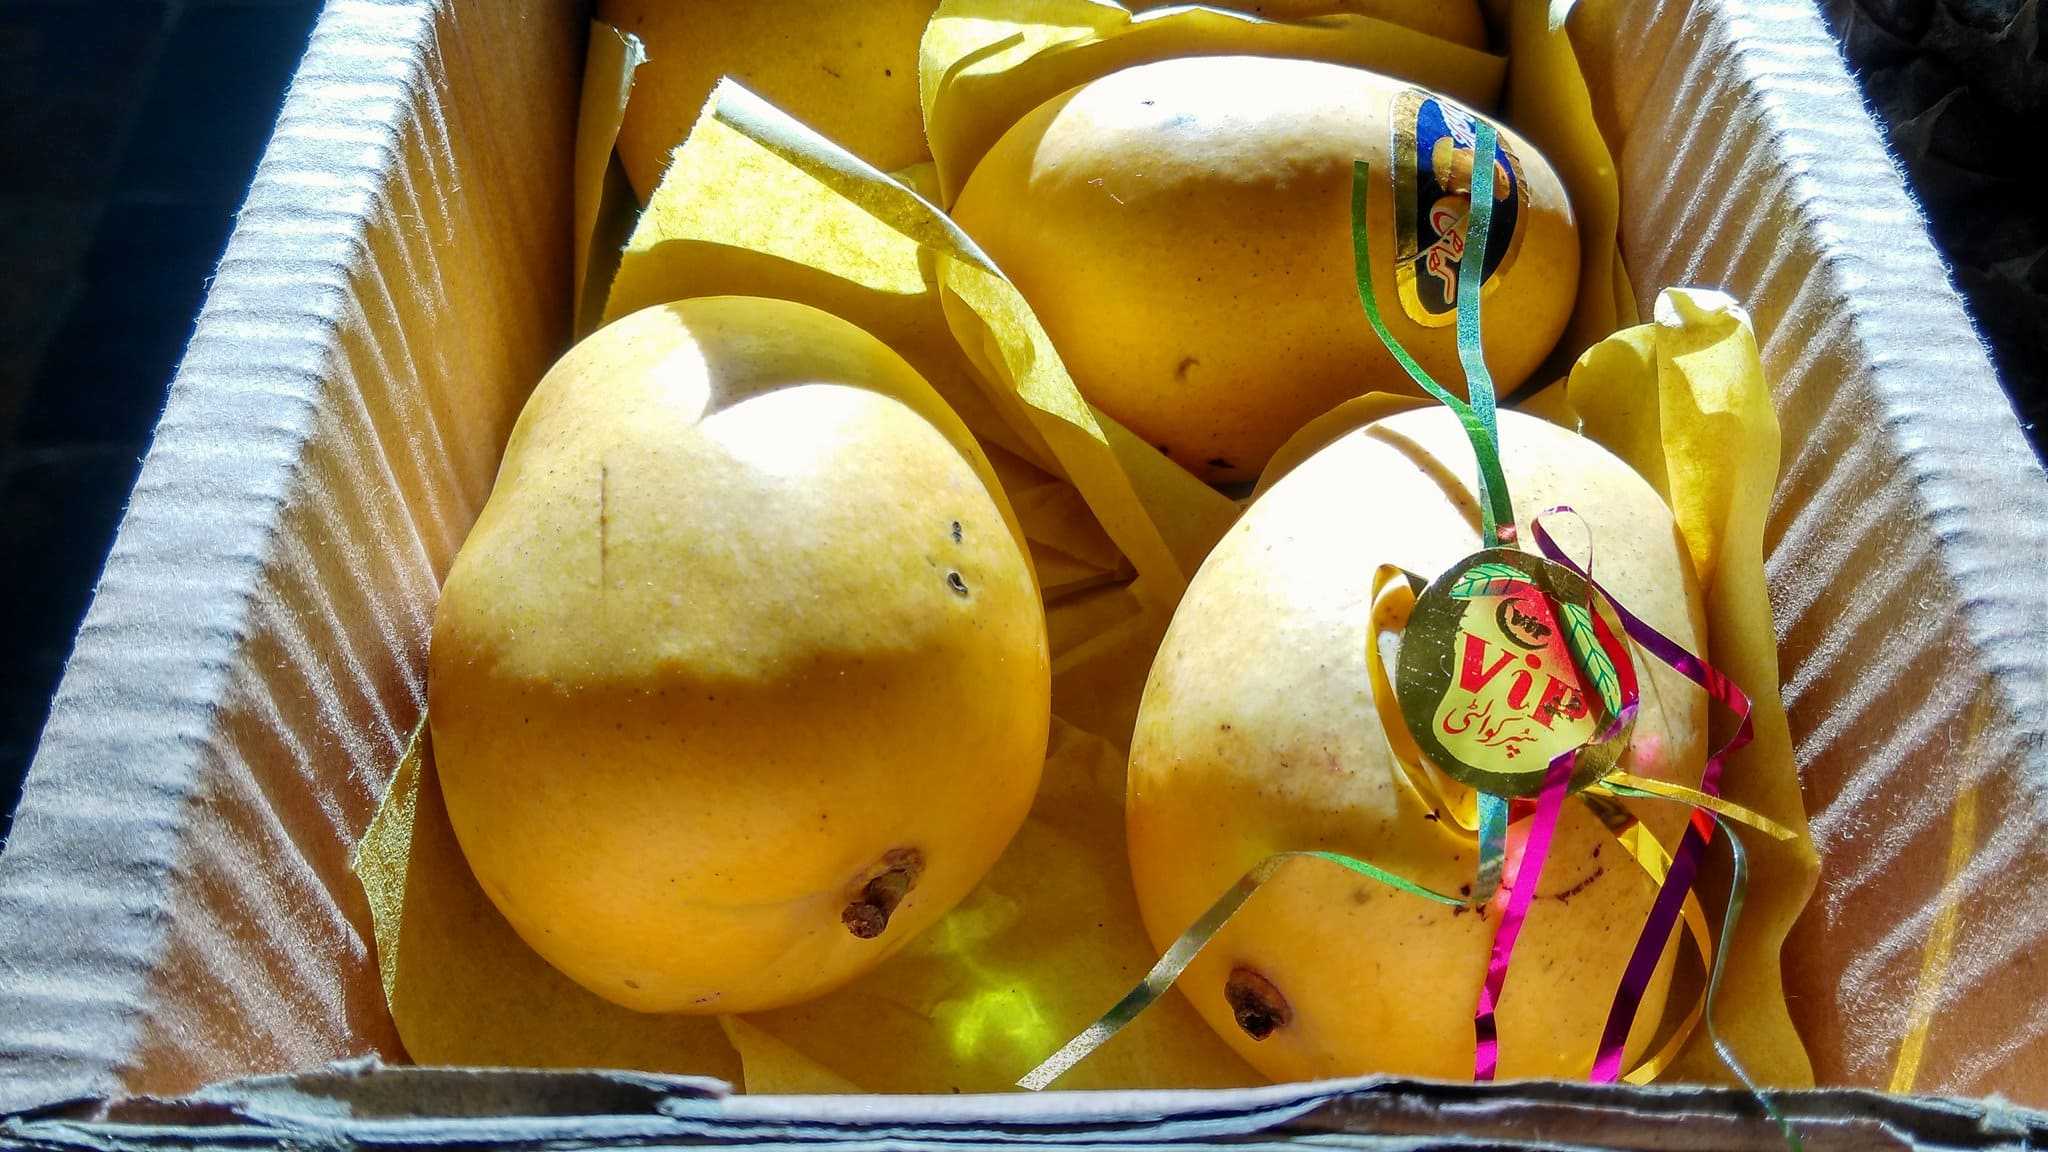 Как сделать манго спелым: 9 шагов (с иллюстрациями)